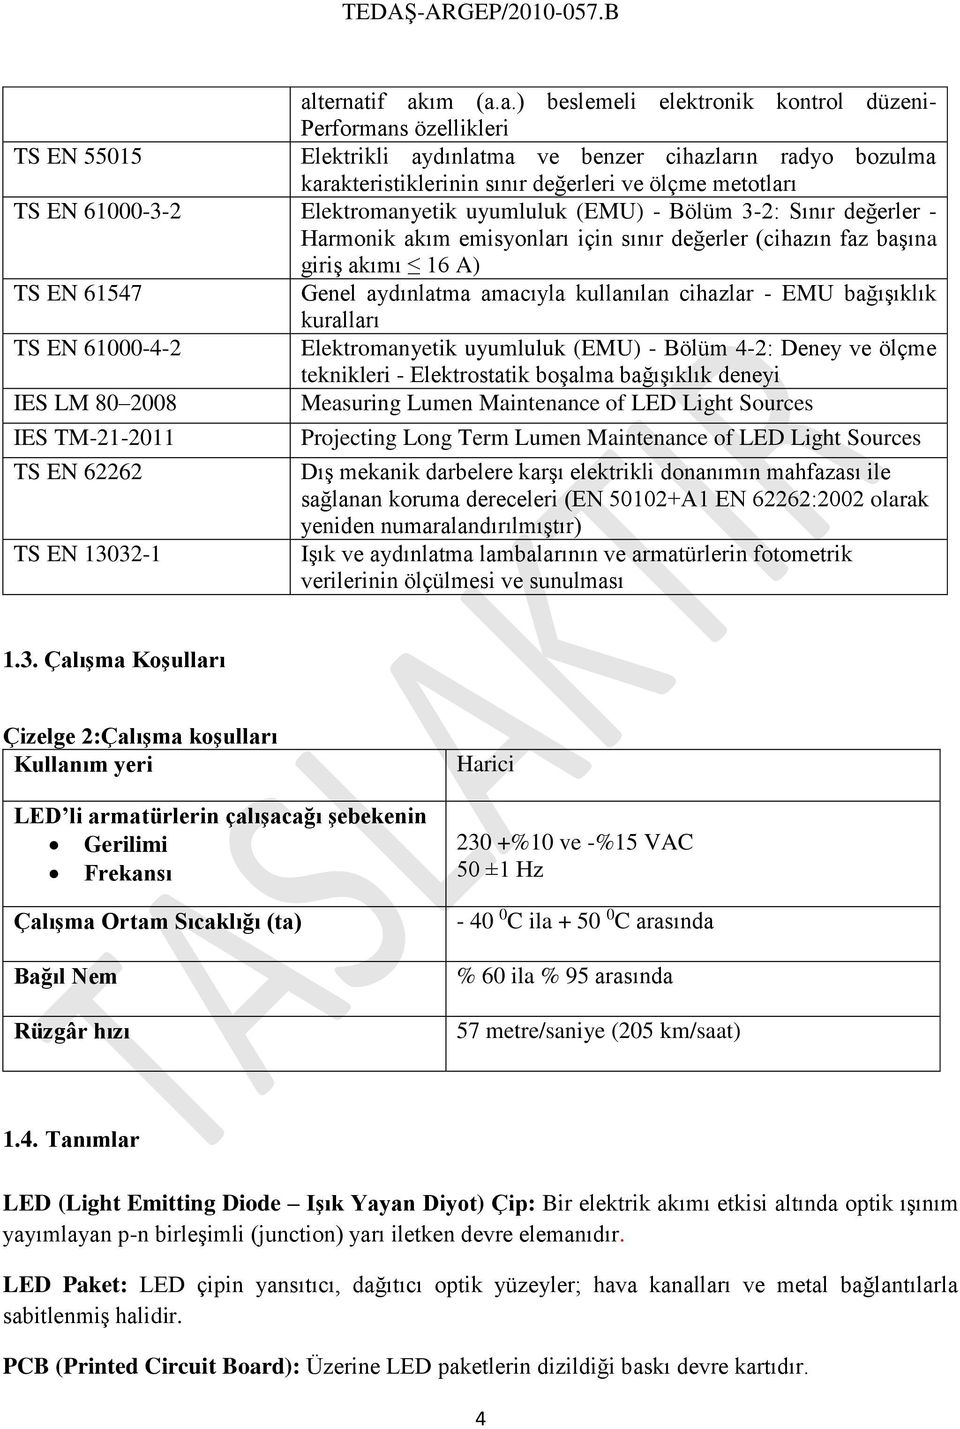 aydınlatma amacıyla kullanılan cihazlar - EMU bağışıklık kuralları TS EN 61000-4-2 Elektromanyetik uyumluluk (EMU) - Bölüm 4-2: Deney ve ölçme teknikleri - Elektrostatik boşalma bağışıklık deneyi IES